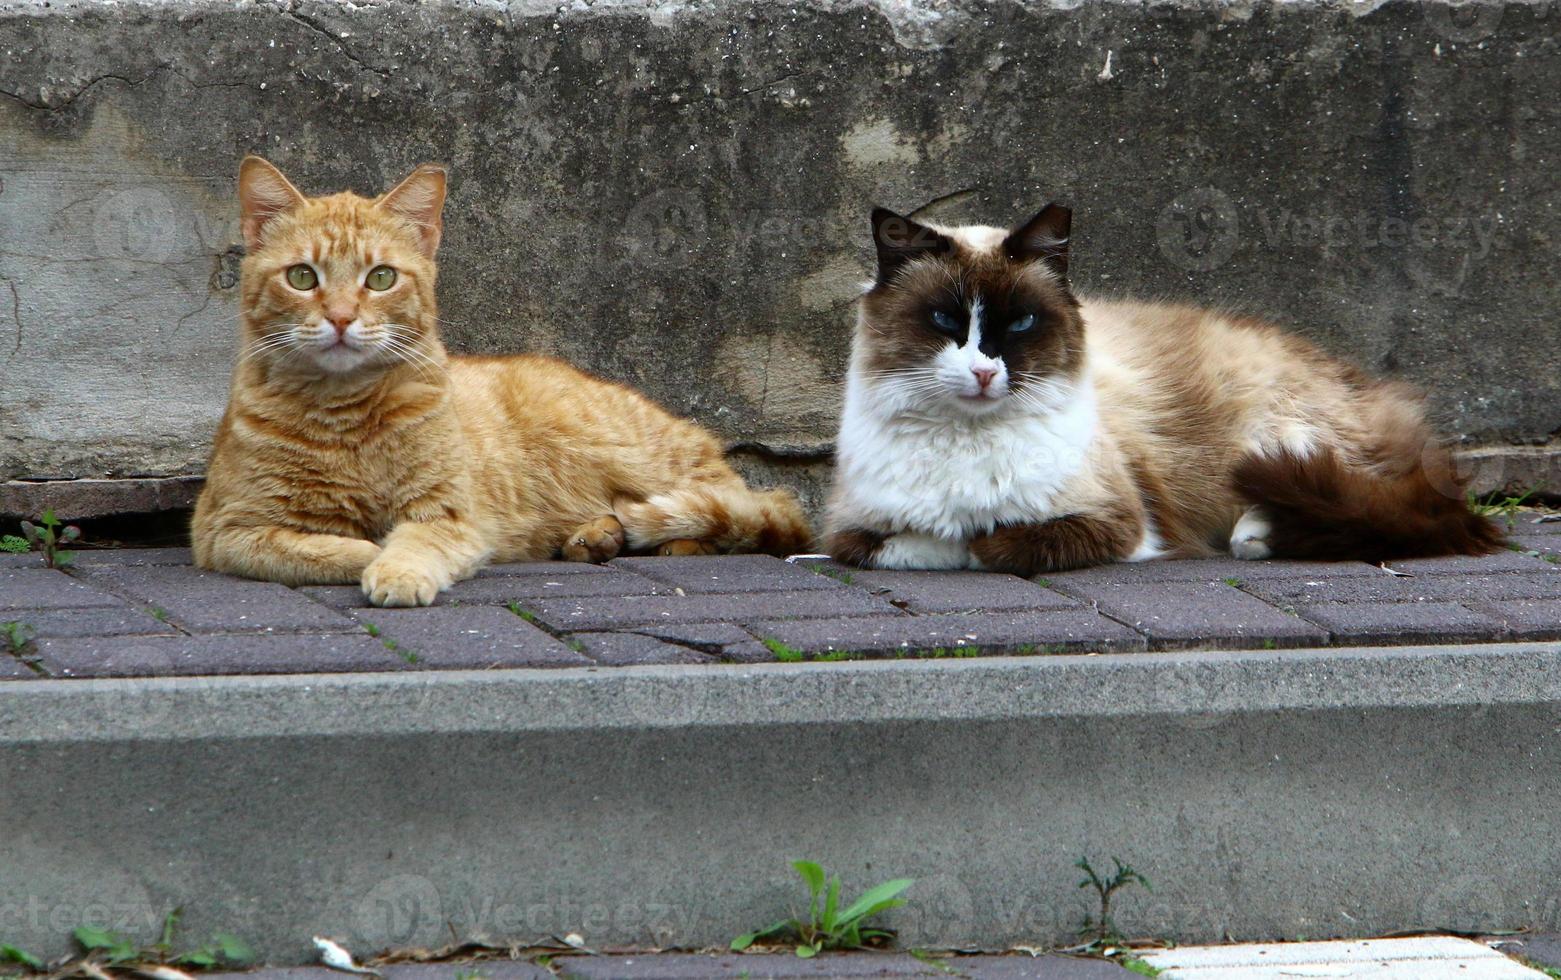 o gato doméstico é um mamífero da família dos felinos da ordem carnívora. foto